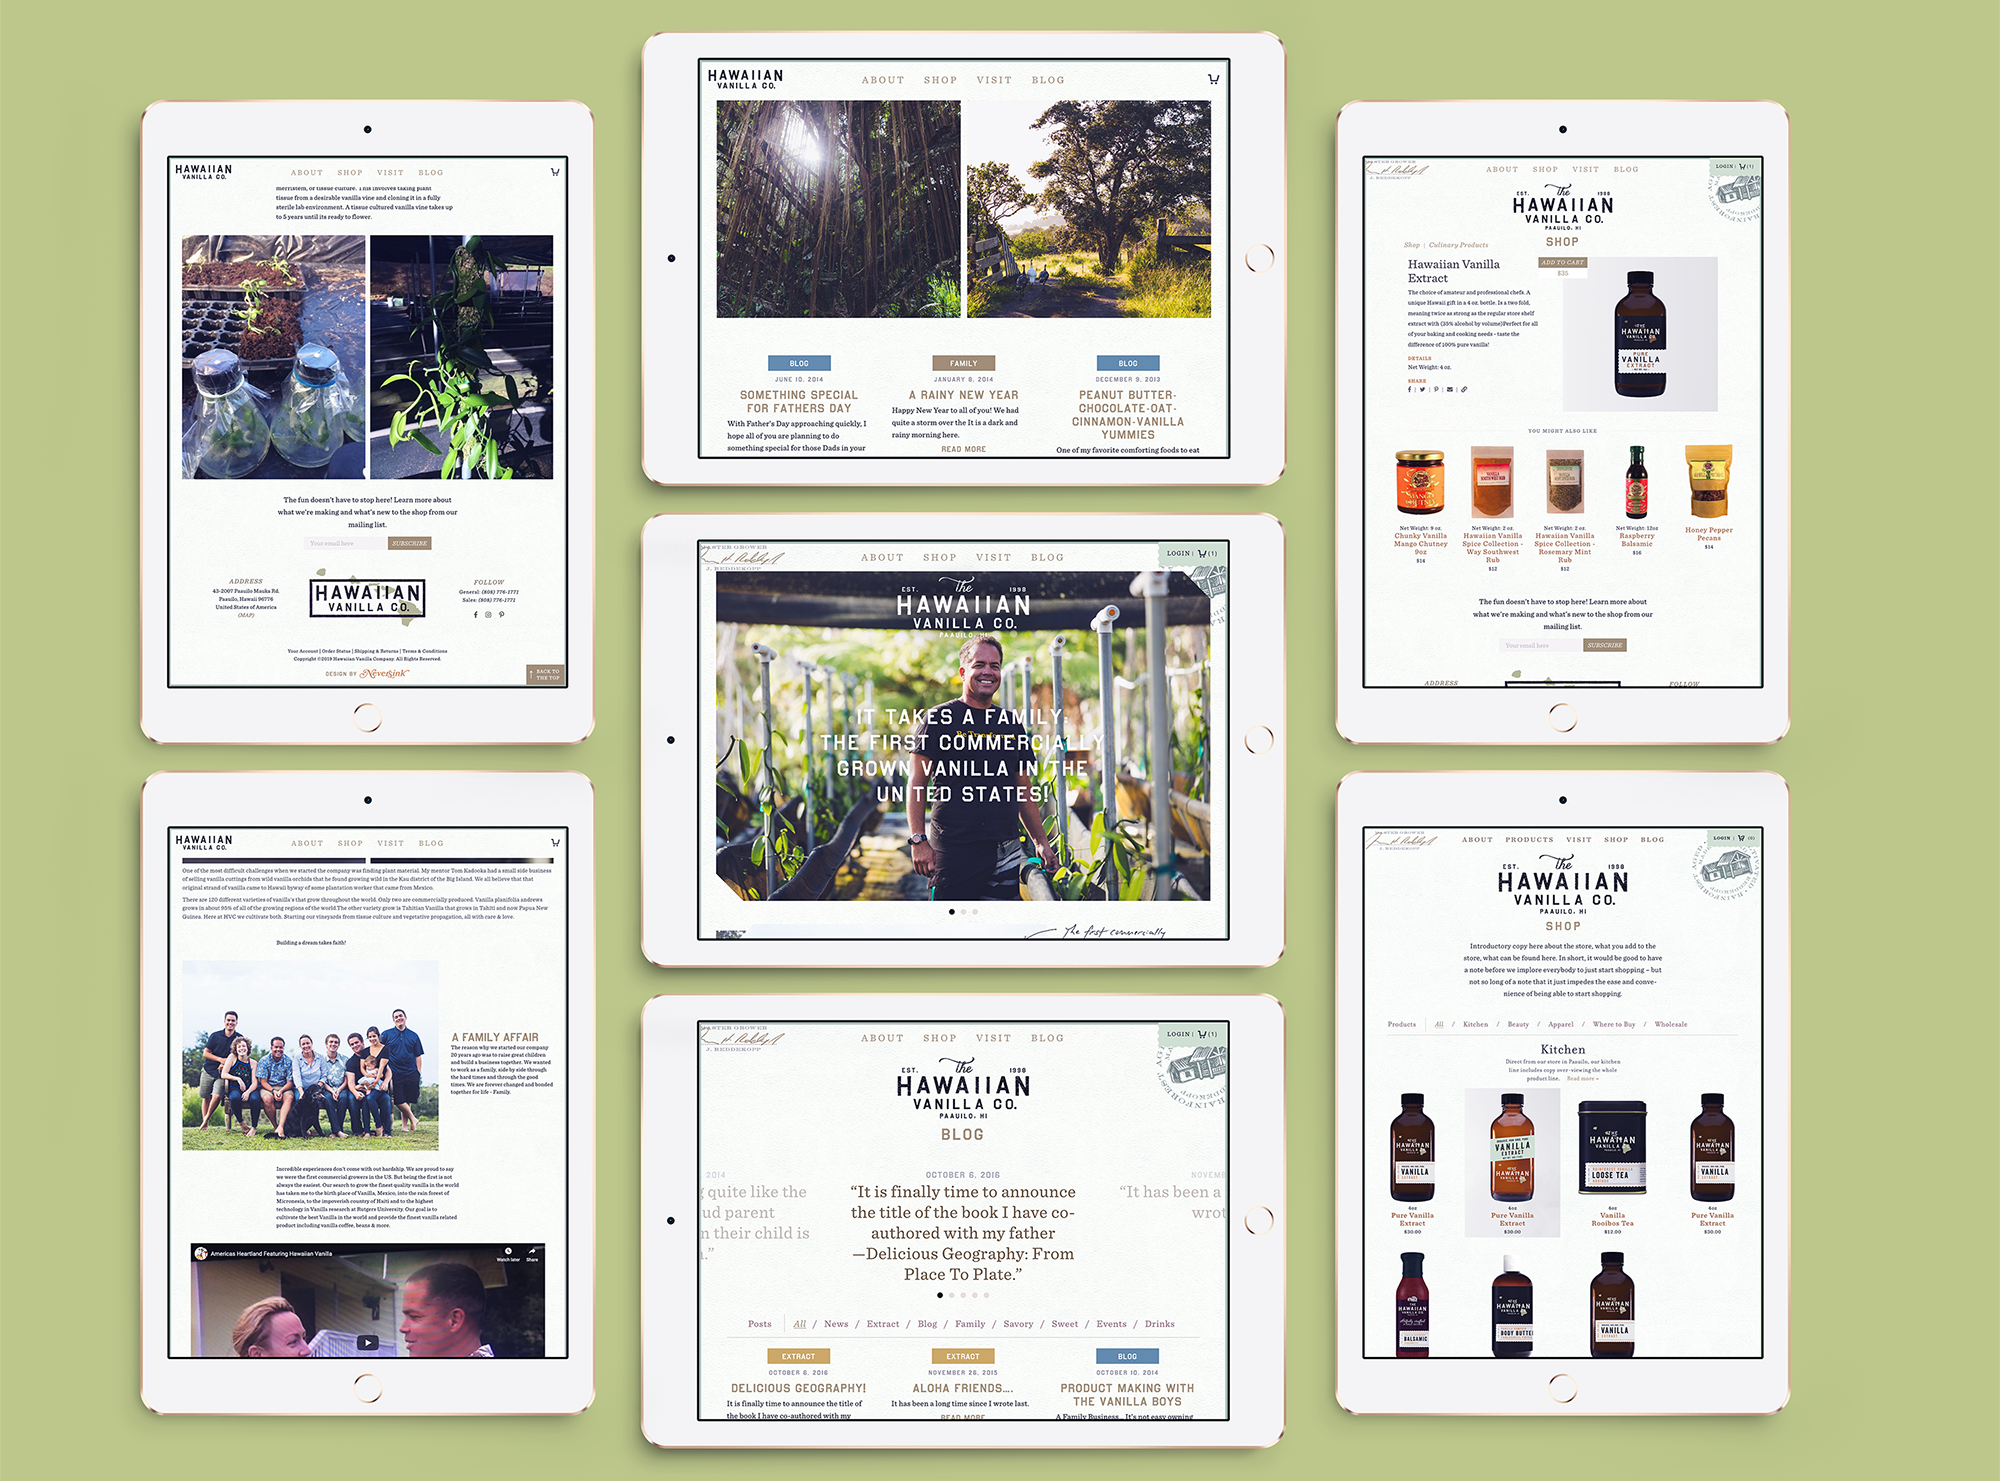 Hawaiian Vanilla Company website on iPads